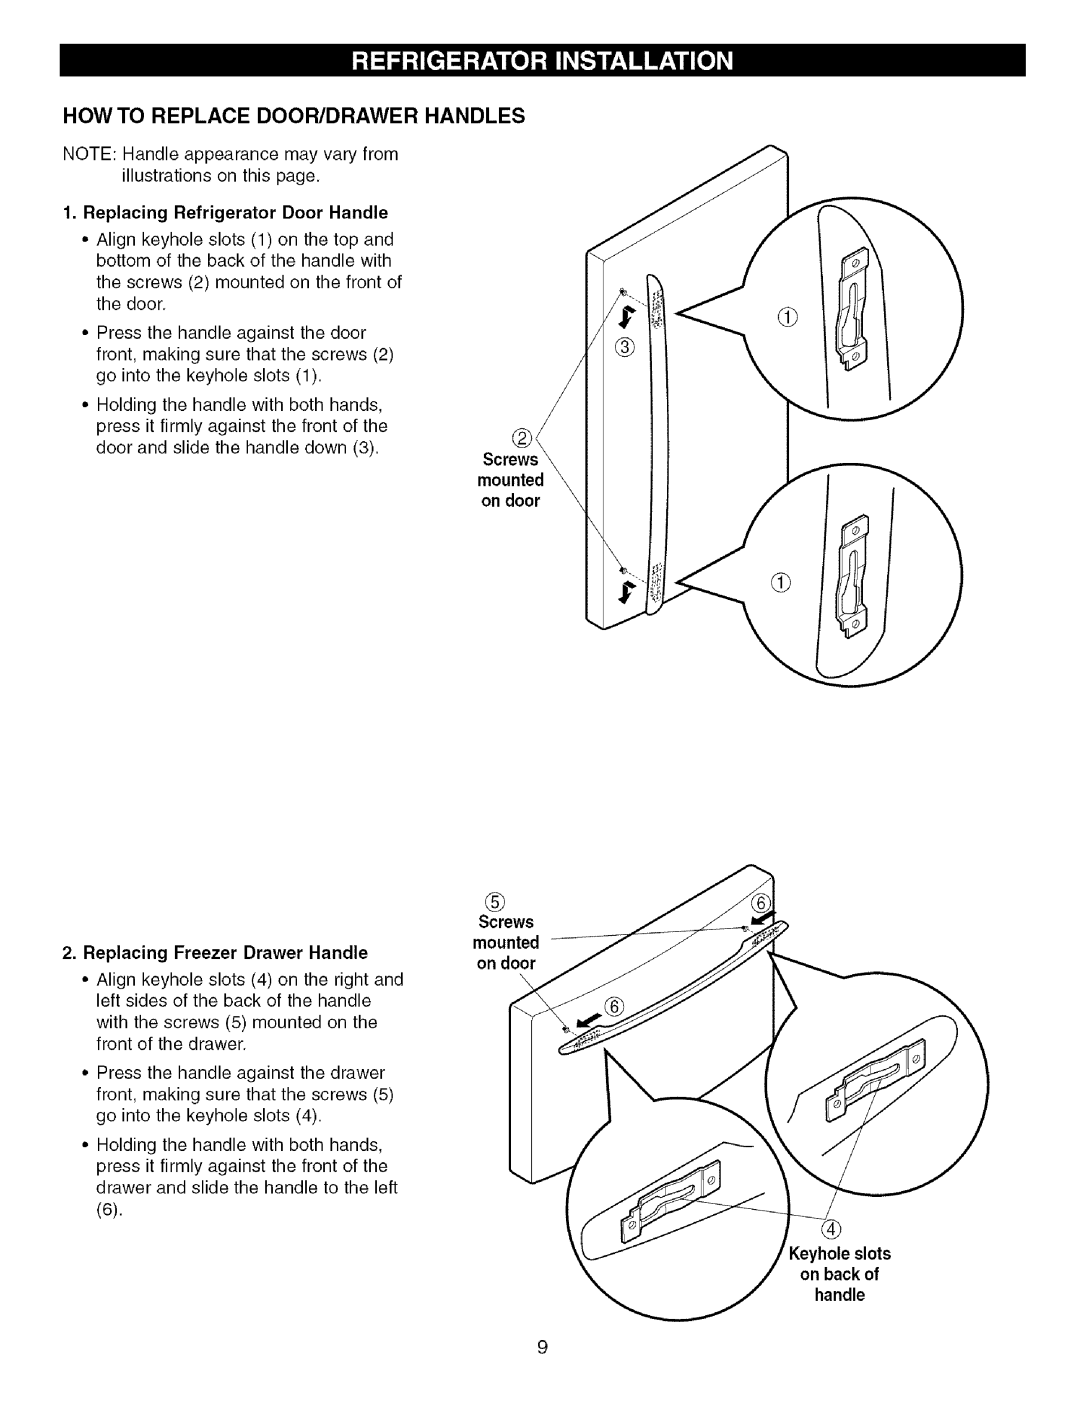 Kenmore 795.755564 How To Replace Door/Drawer Handles, Replacing Refrigerator Door Handle, Screws mounted on door 